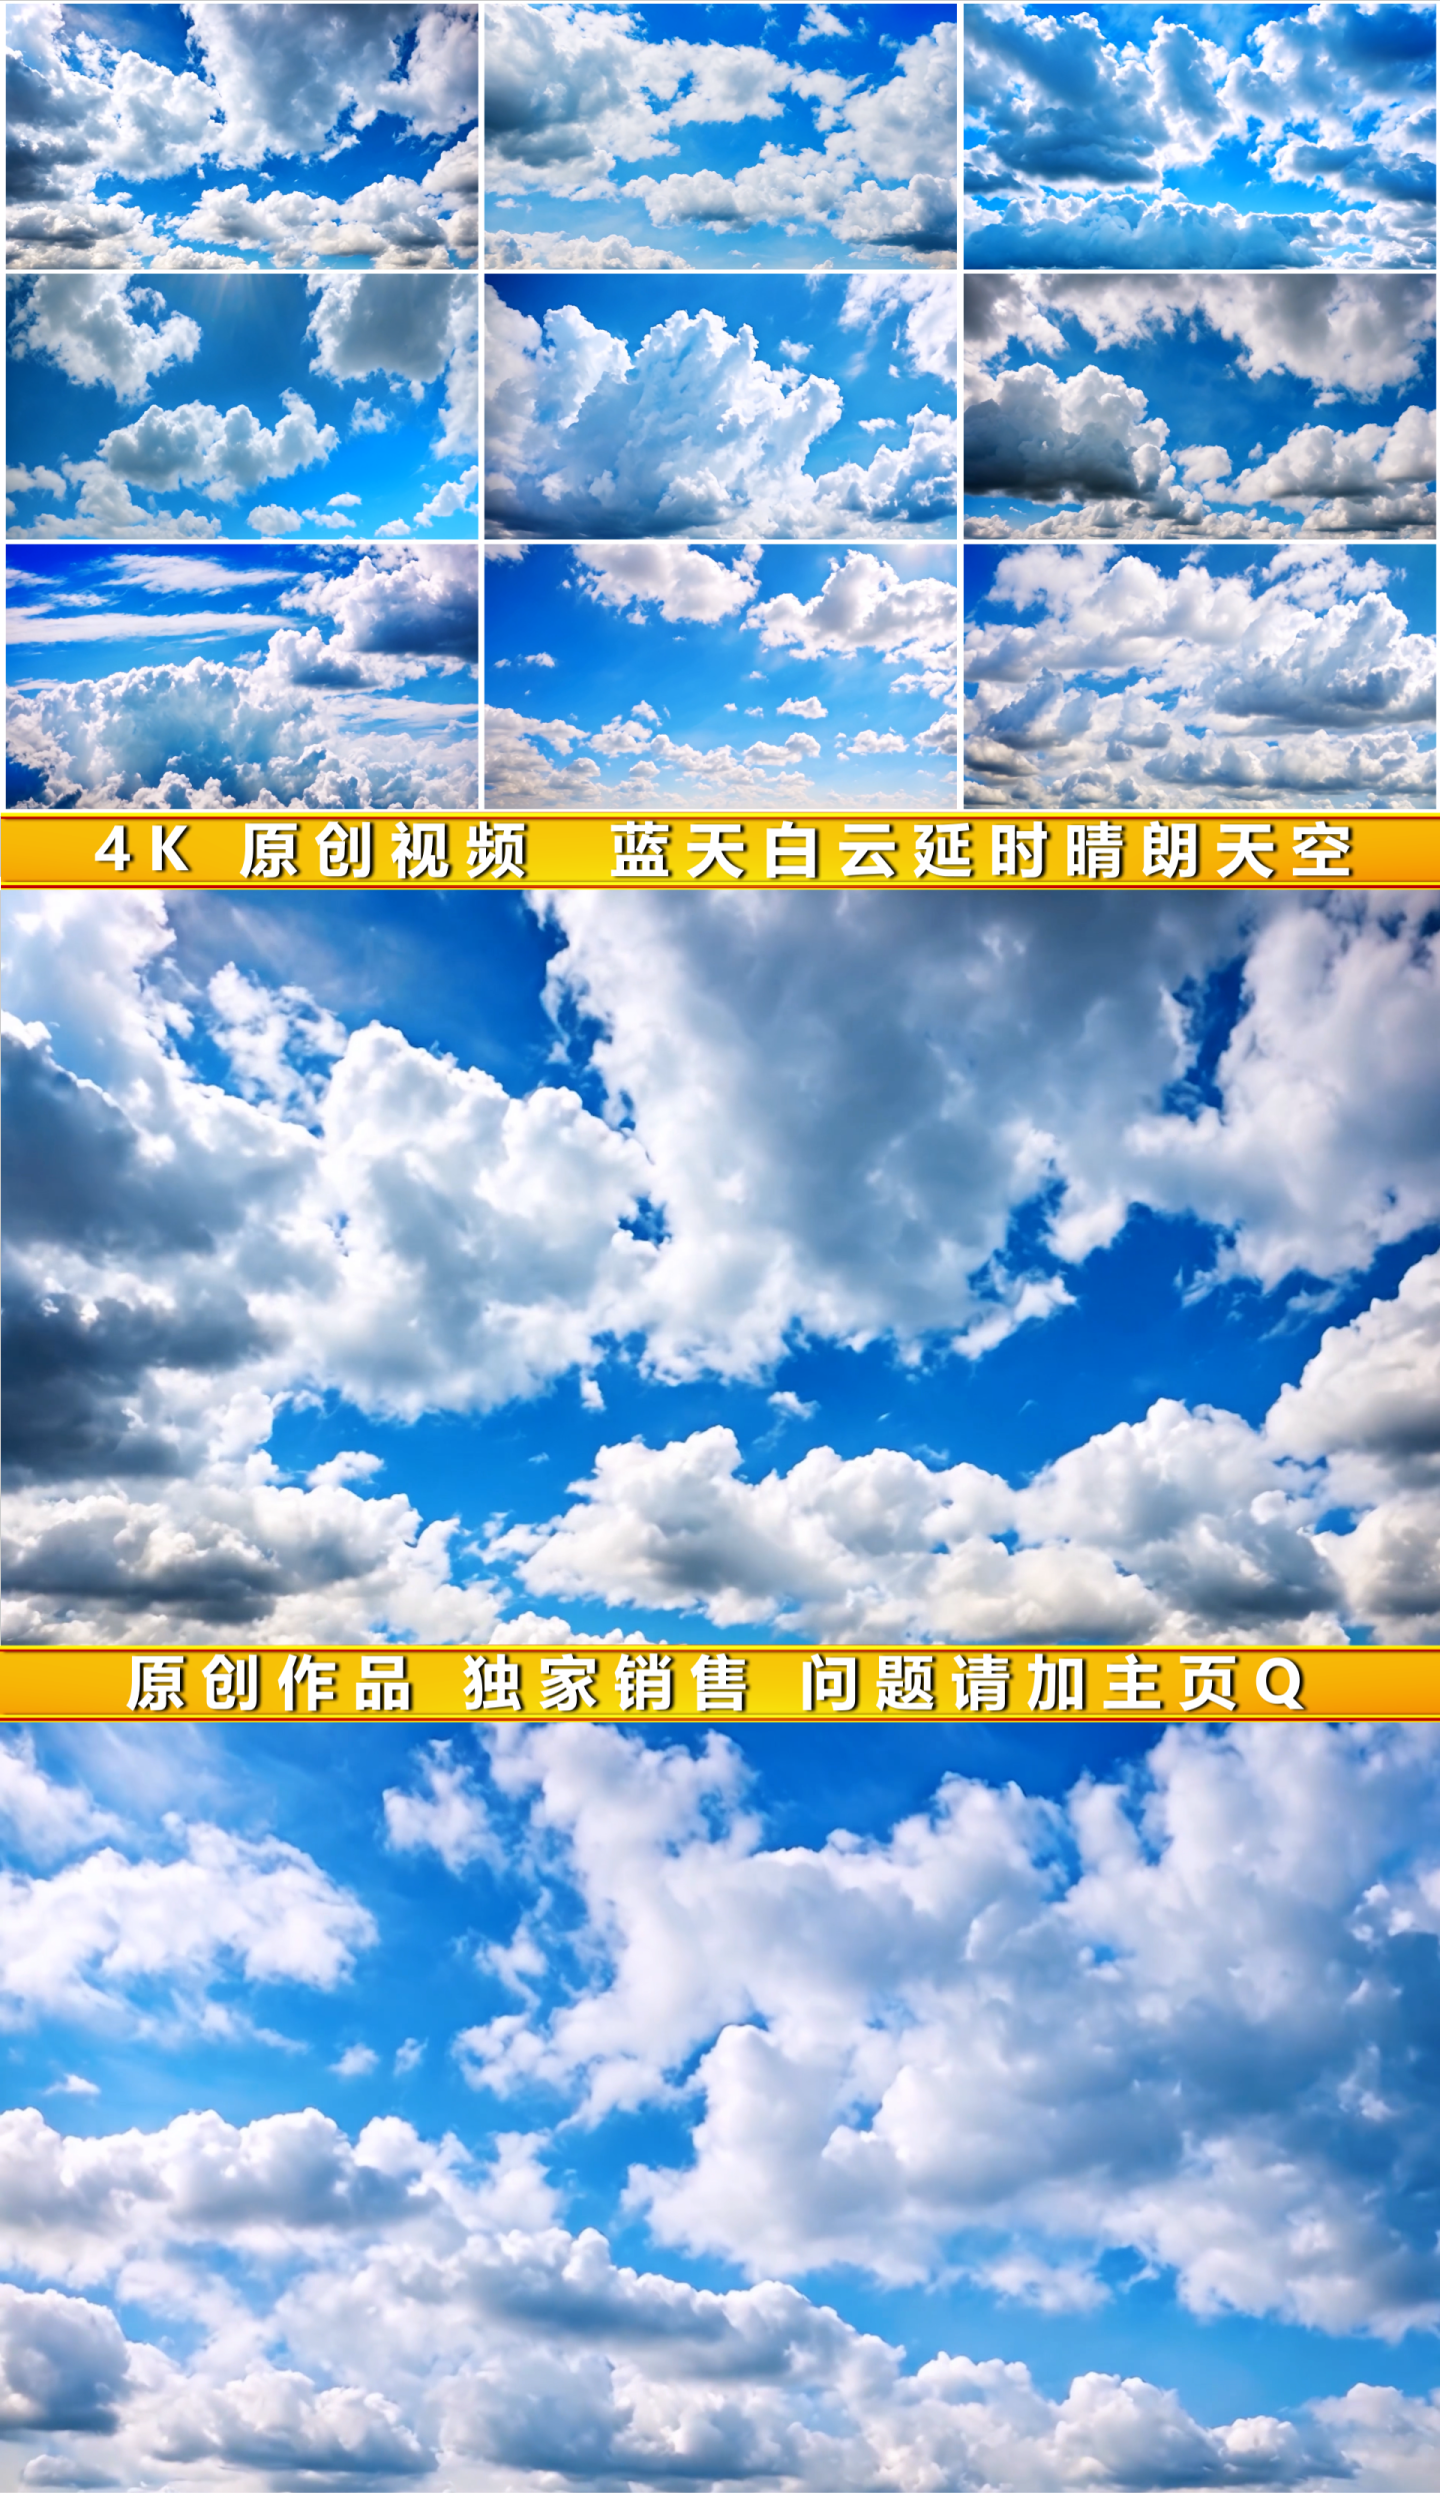 蓝天白云延时晴朗天空阳光空气天空空镜